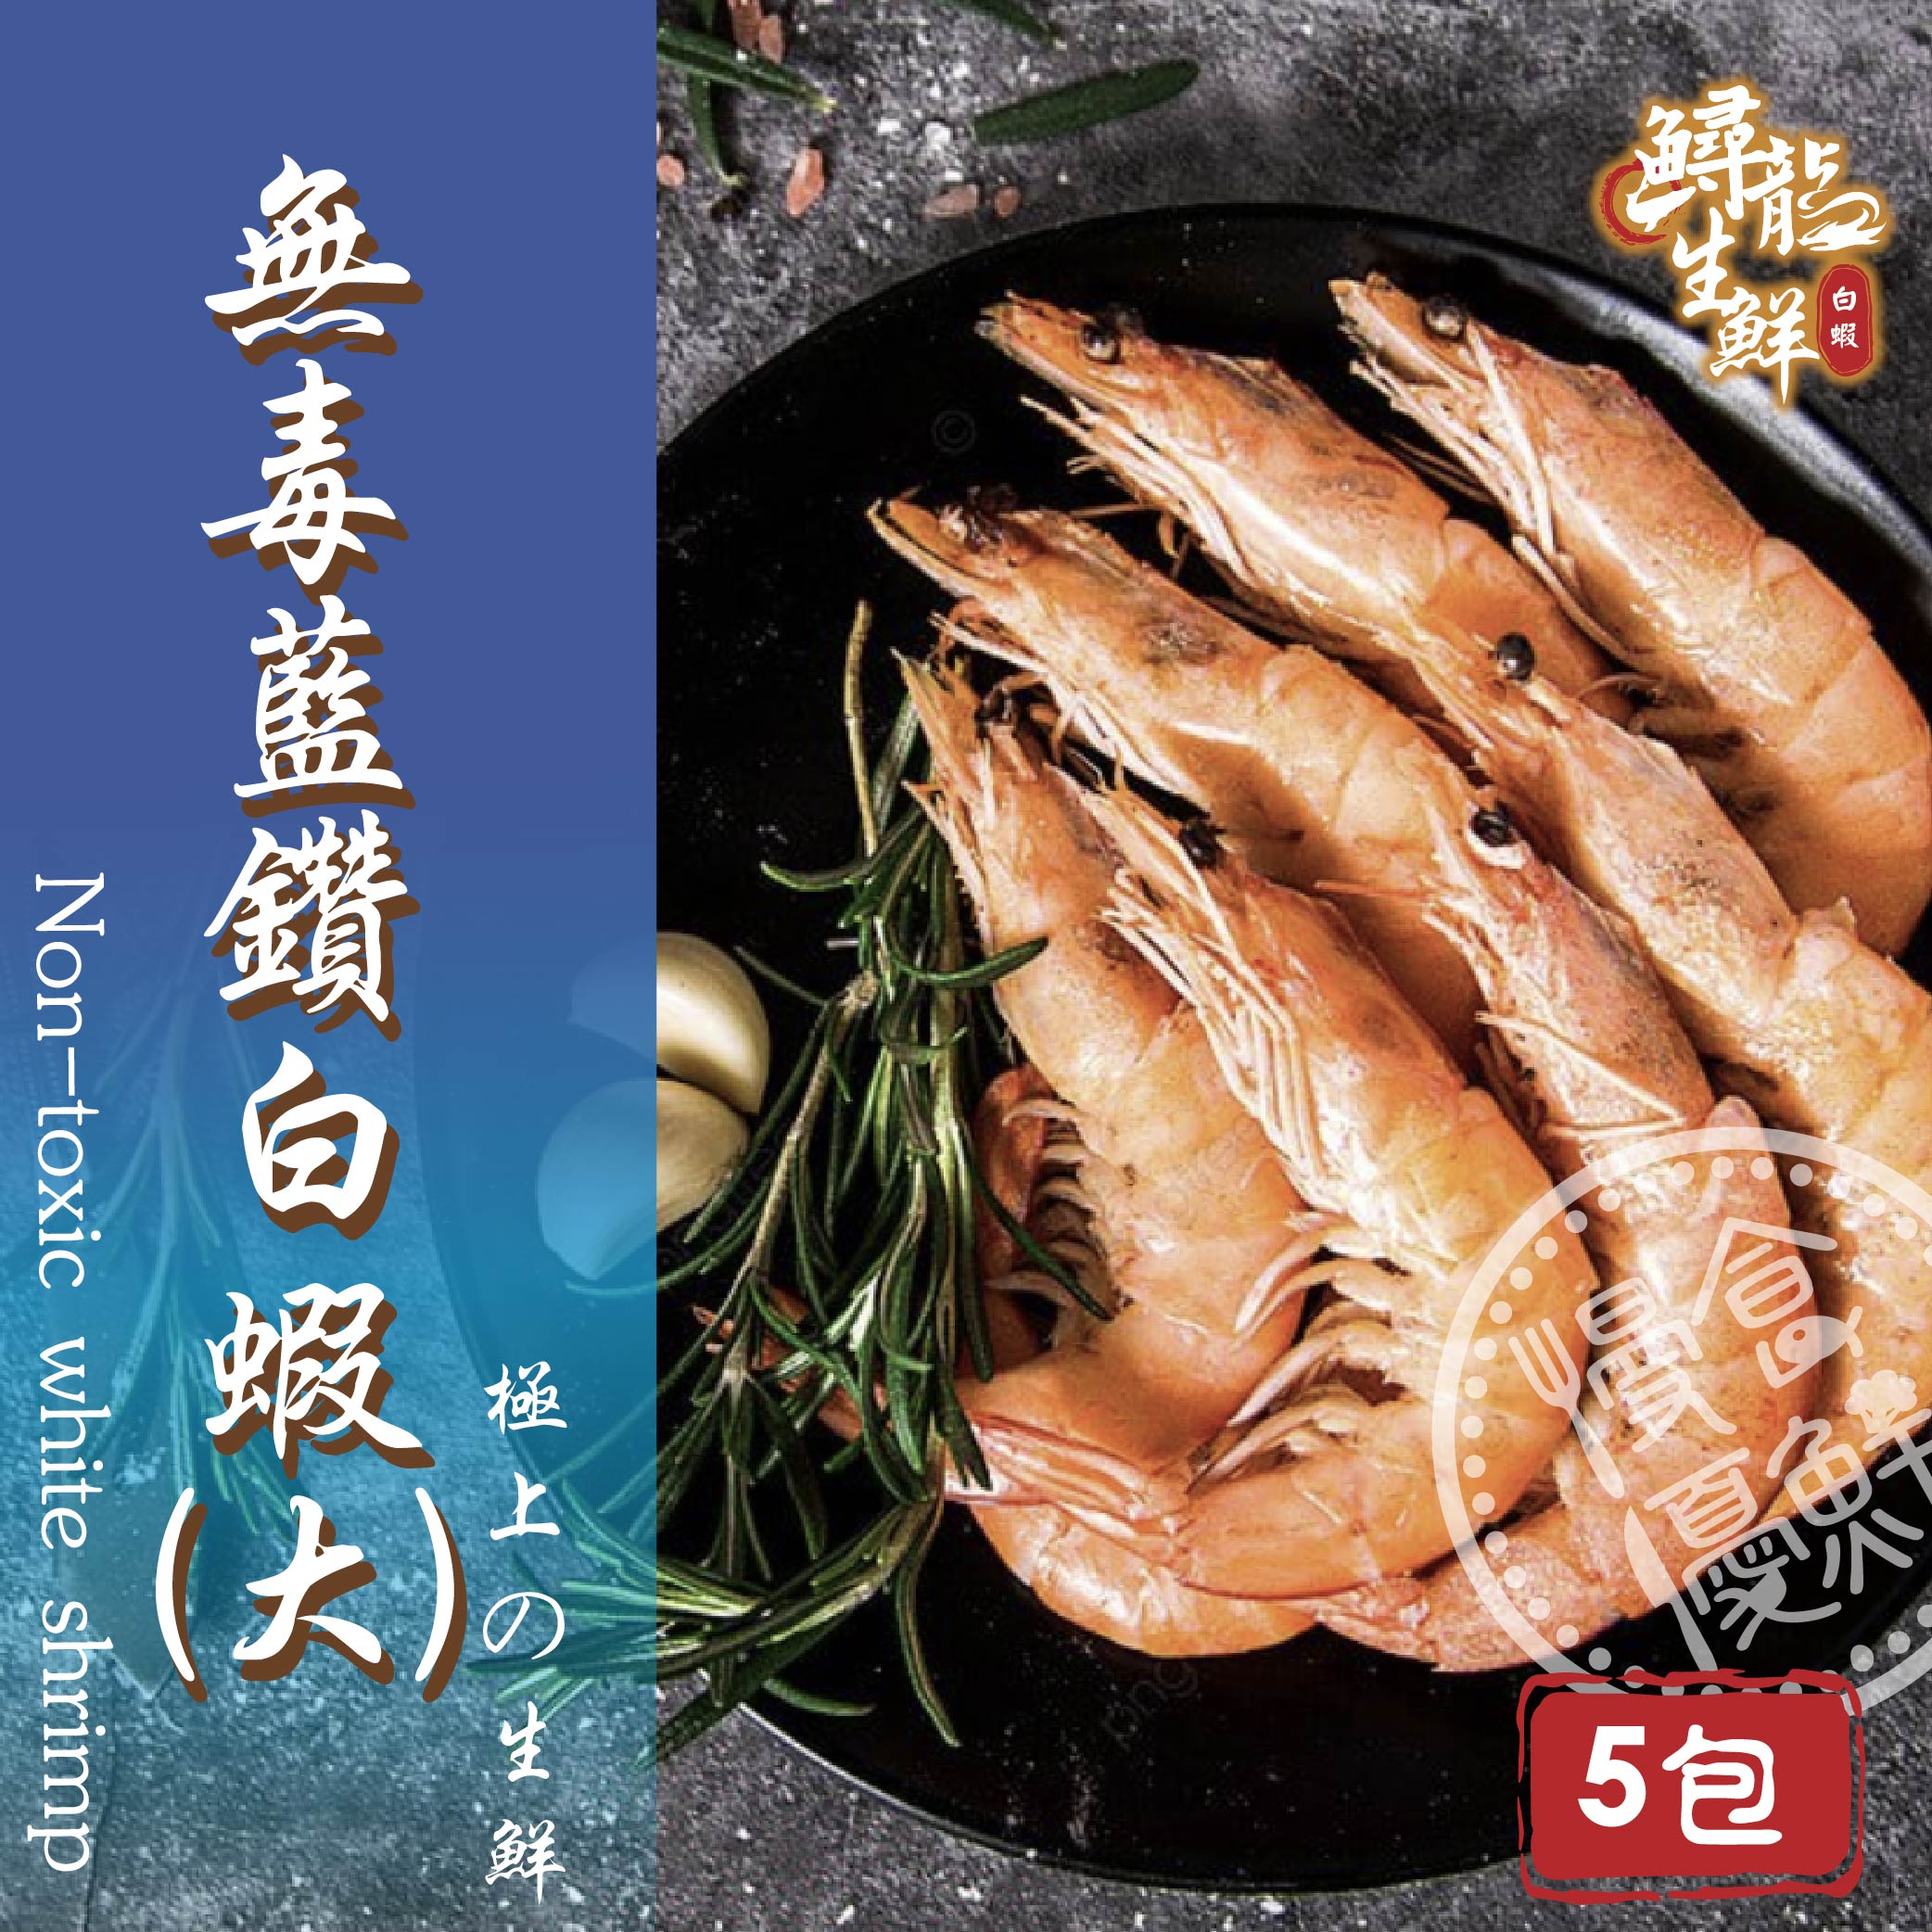 【慢食優鮮】無毒藍鑽白蝦 (250g/冷凍) 五入組 -60℃急速冷凍 無抗生素 無化學添加物